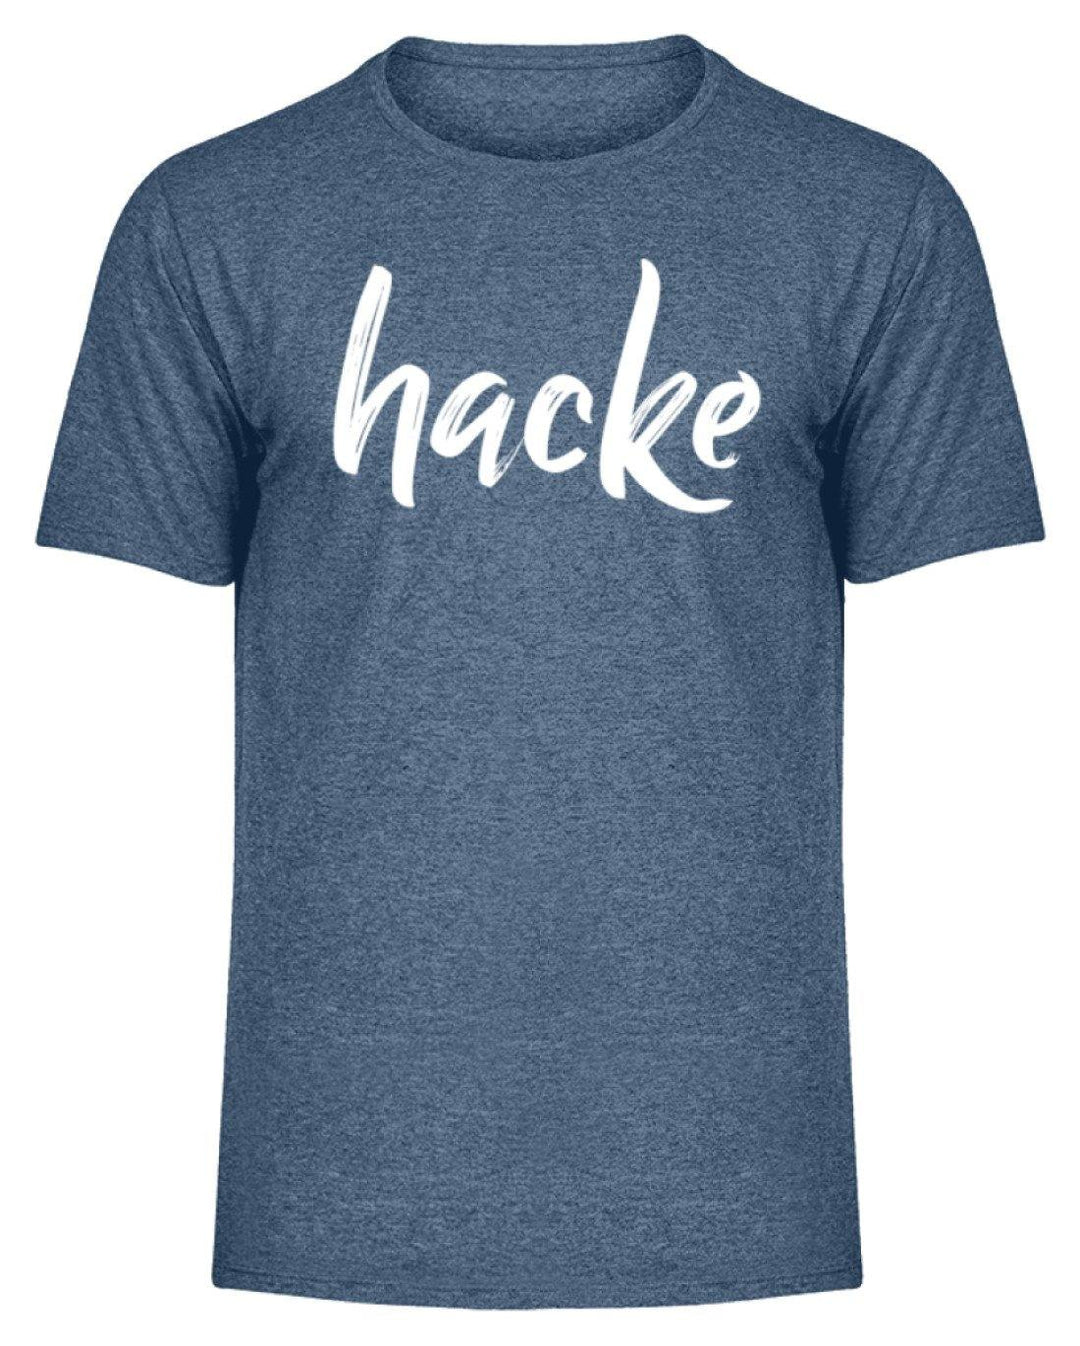 hacke Shirt  - Herren Melange Shirt - Words on Shirts Sag es mit dem Mittelfinger Shirts Hoodies Sweatshirt Taschen Gymsack Spruch Sprüche Statement